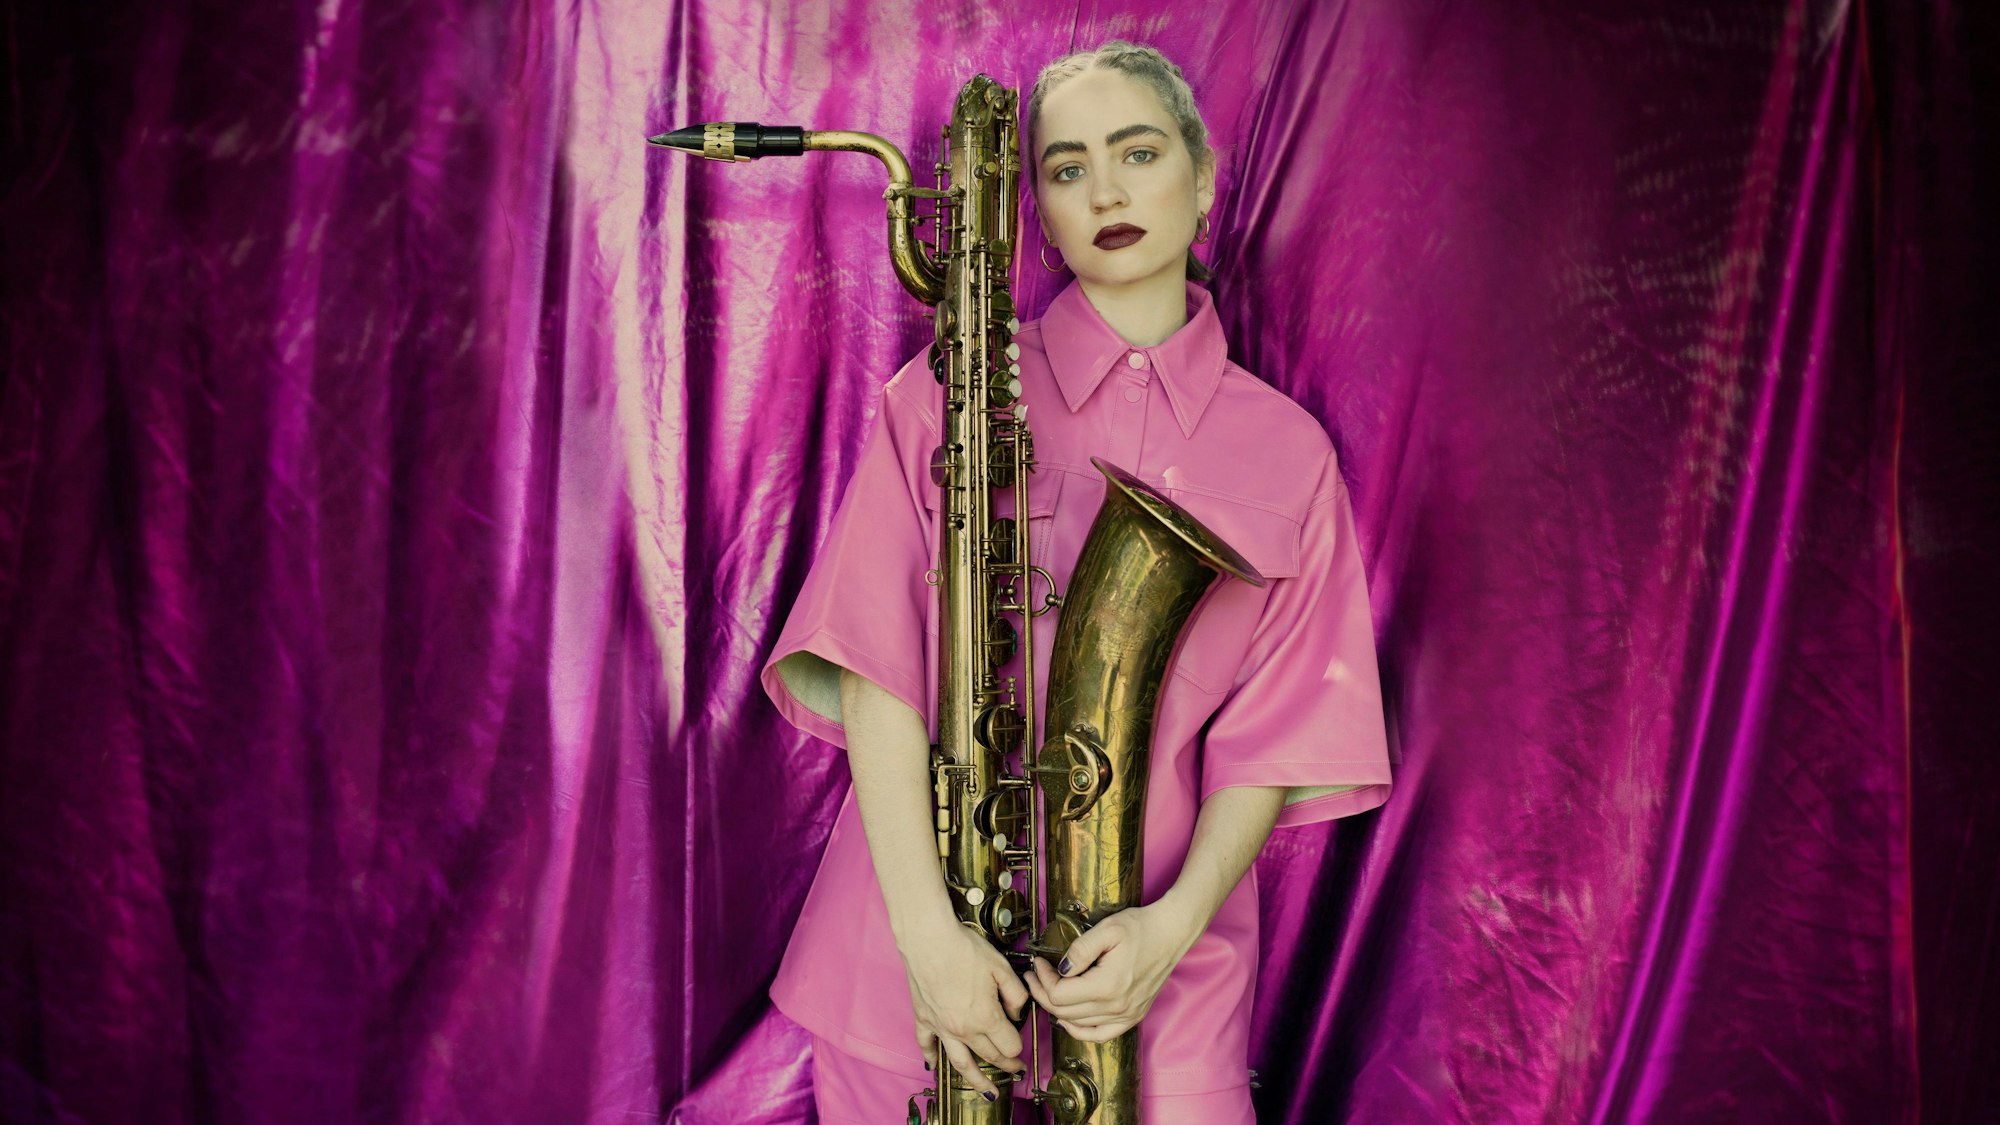 Auf dem Bild ist eine blonde Frau in einem pinken Hemd zu sehen. Sie hält ein Saxophon. Im Hintergrund ist ein glänzender, pinker Vorhang.